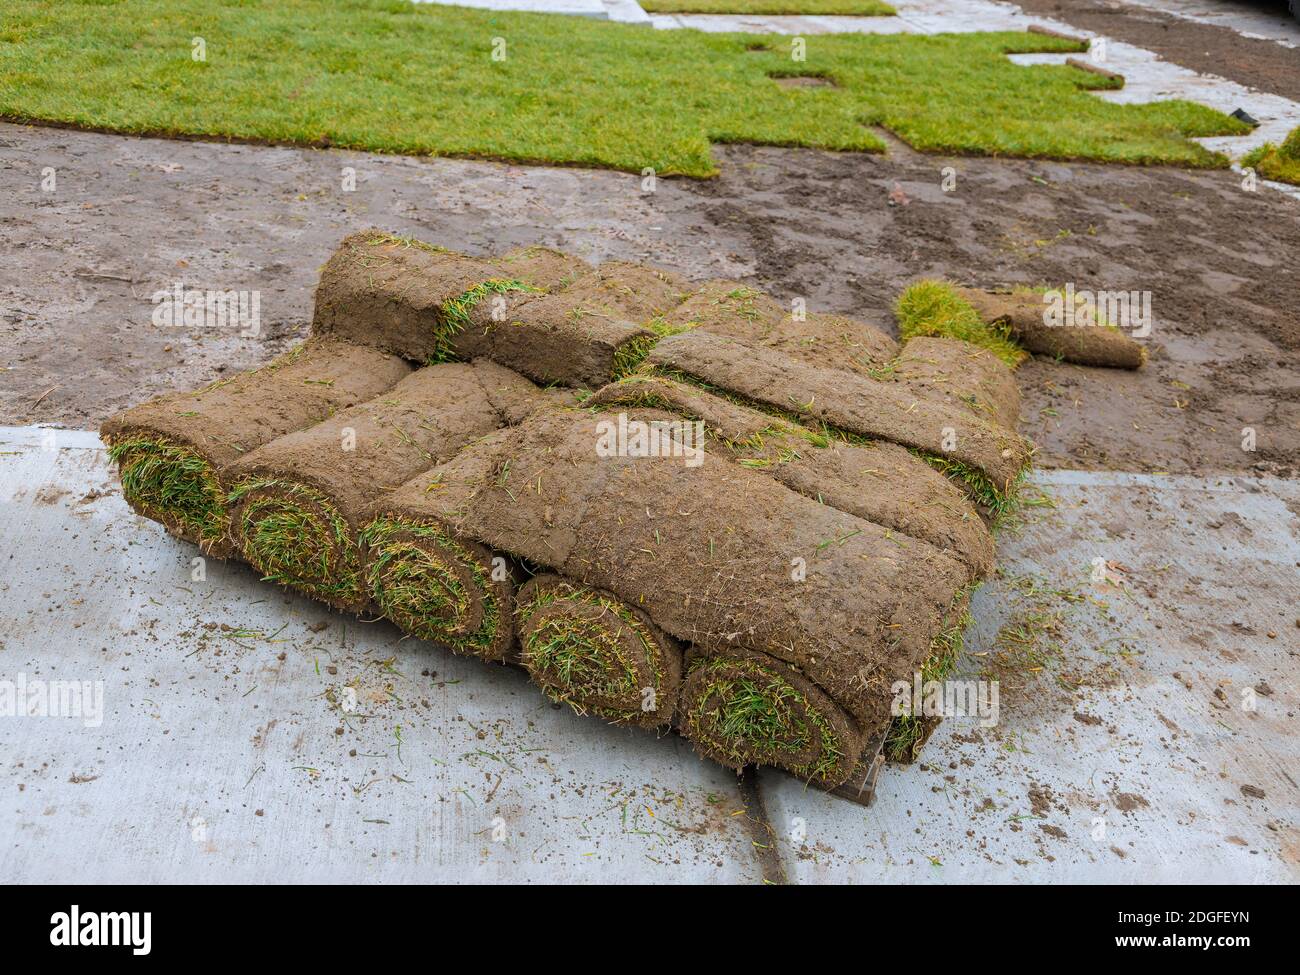 Gazon vert frais en rouleaux pour pelouse et designer paysage en rouleau sur palettes Banque D'Images